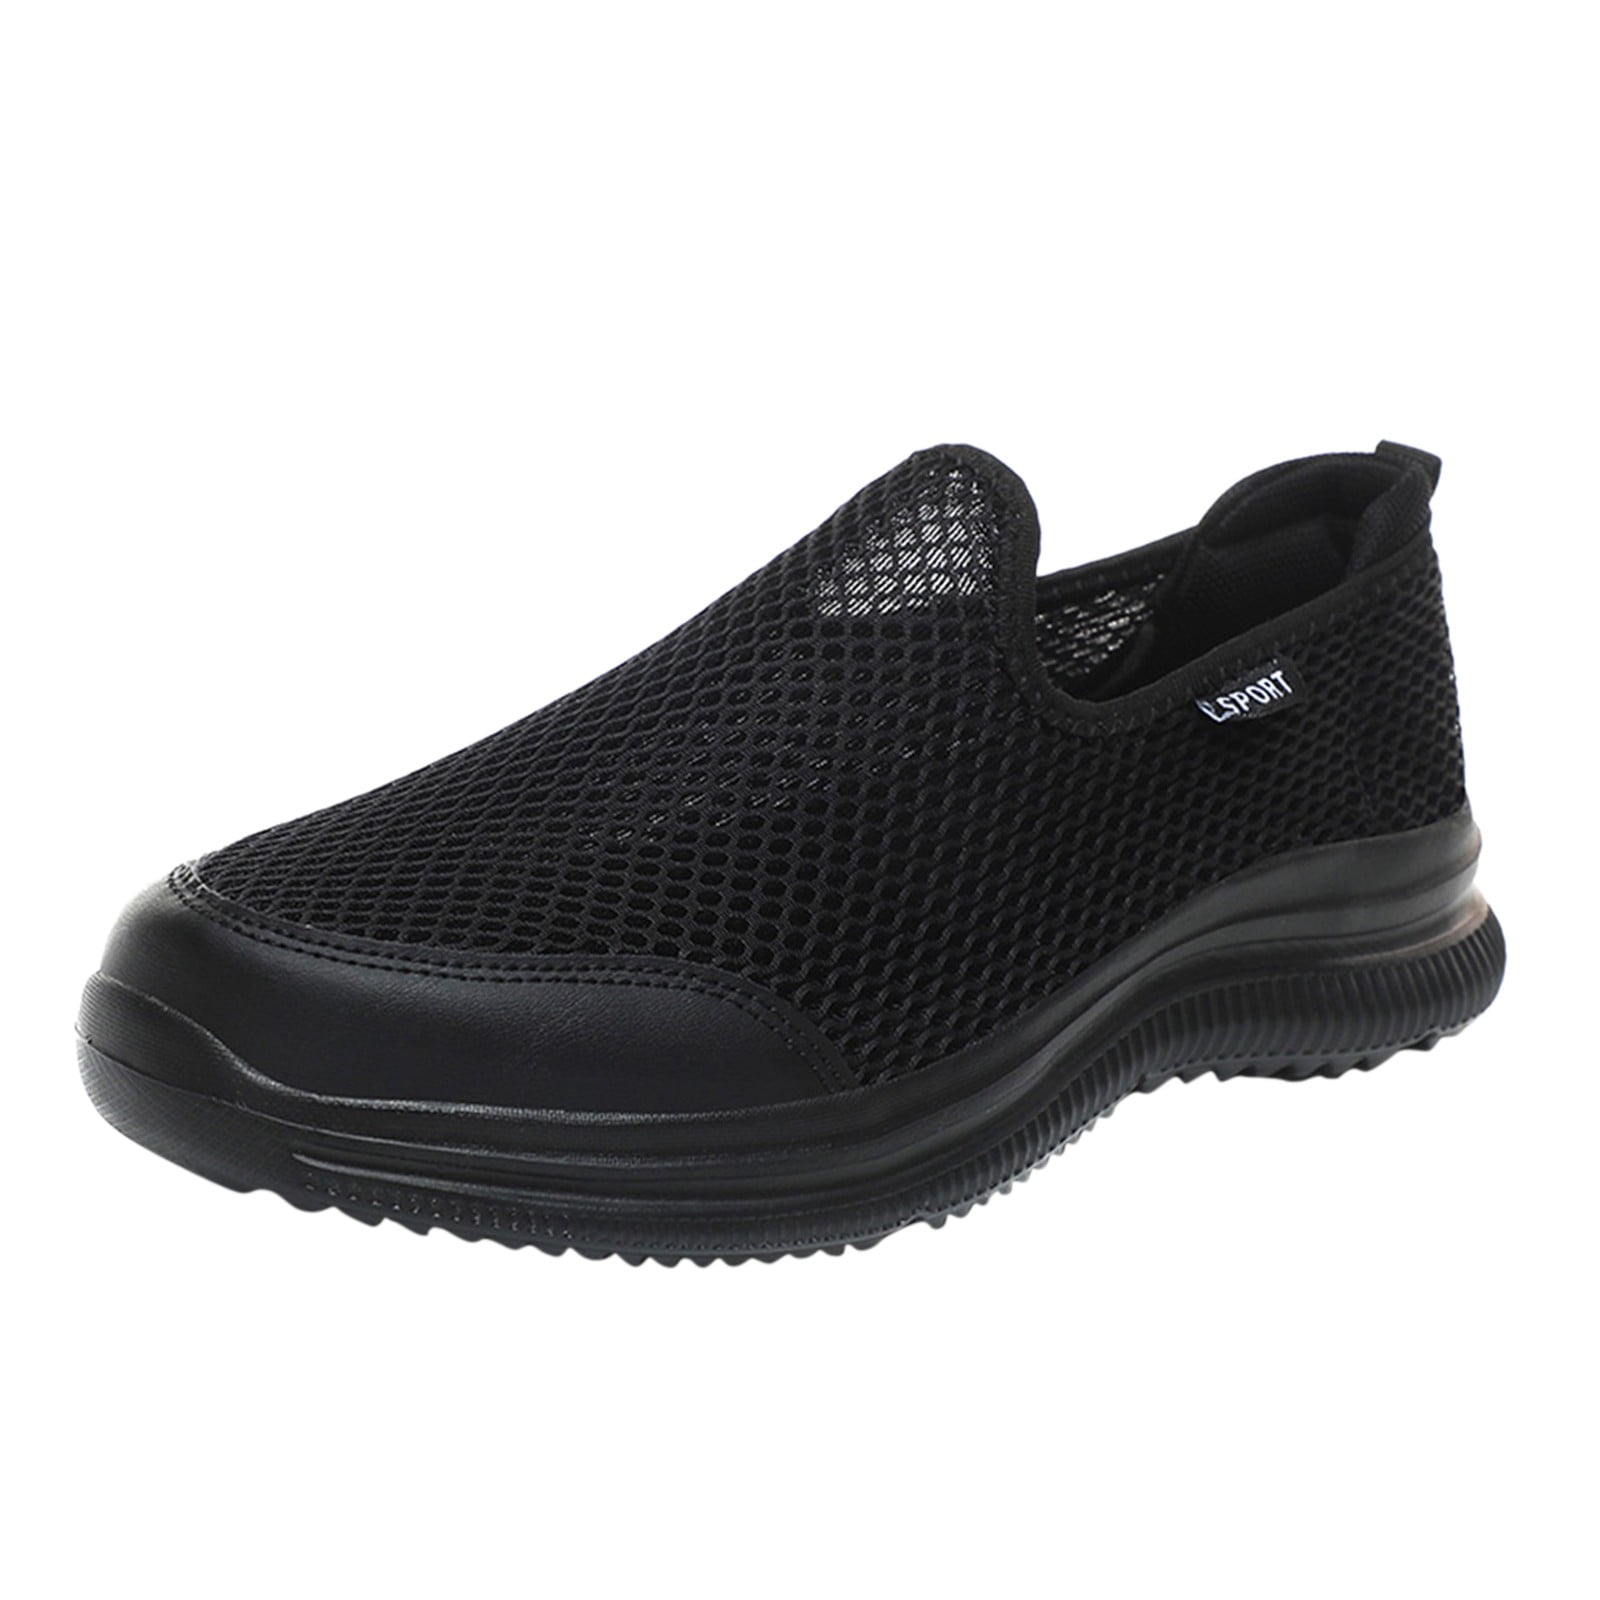 L LOUBIT Women s Walking Shoes Breathable Platform Sock Sneakers Slip On Li